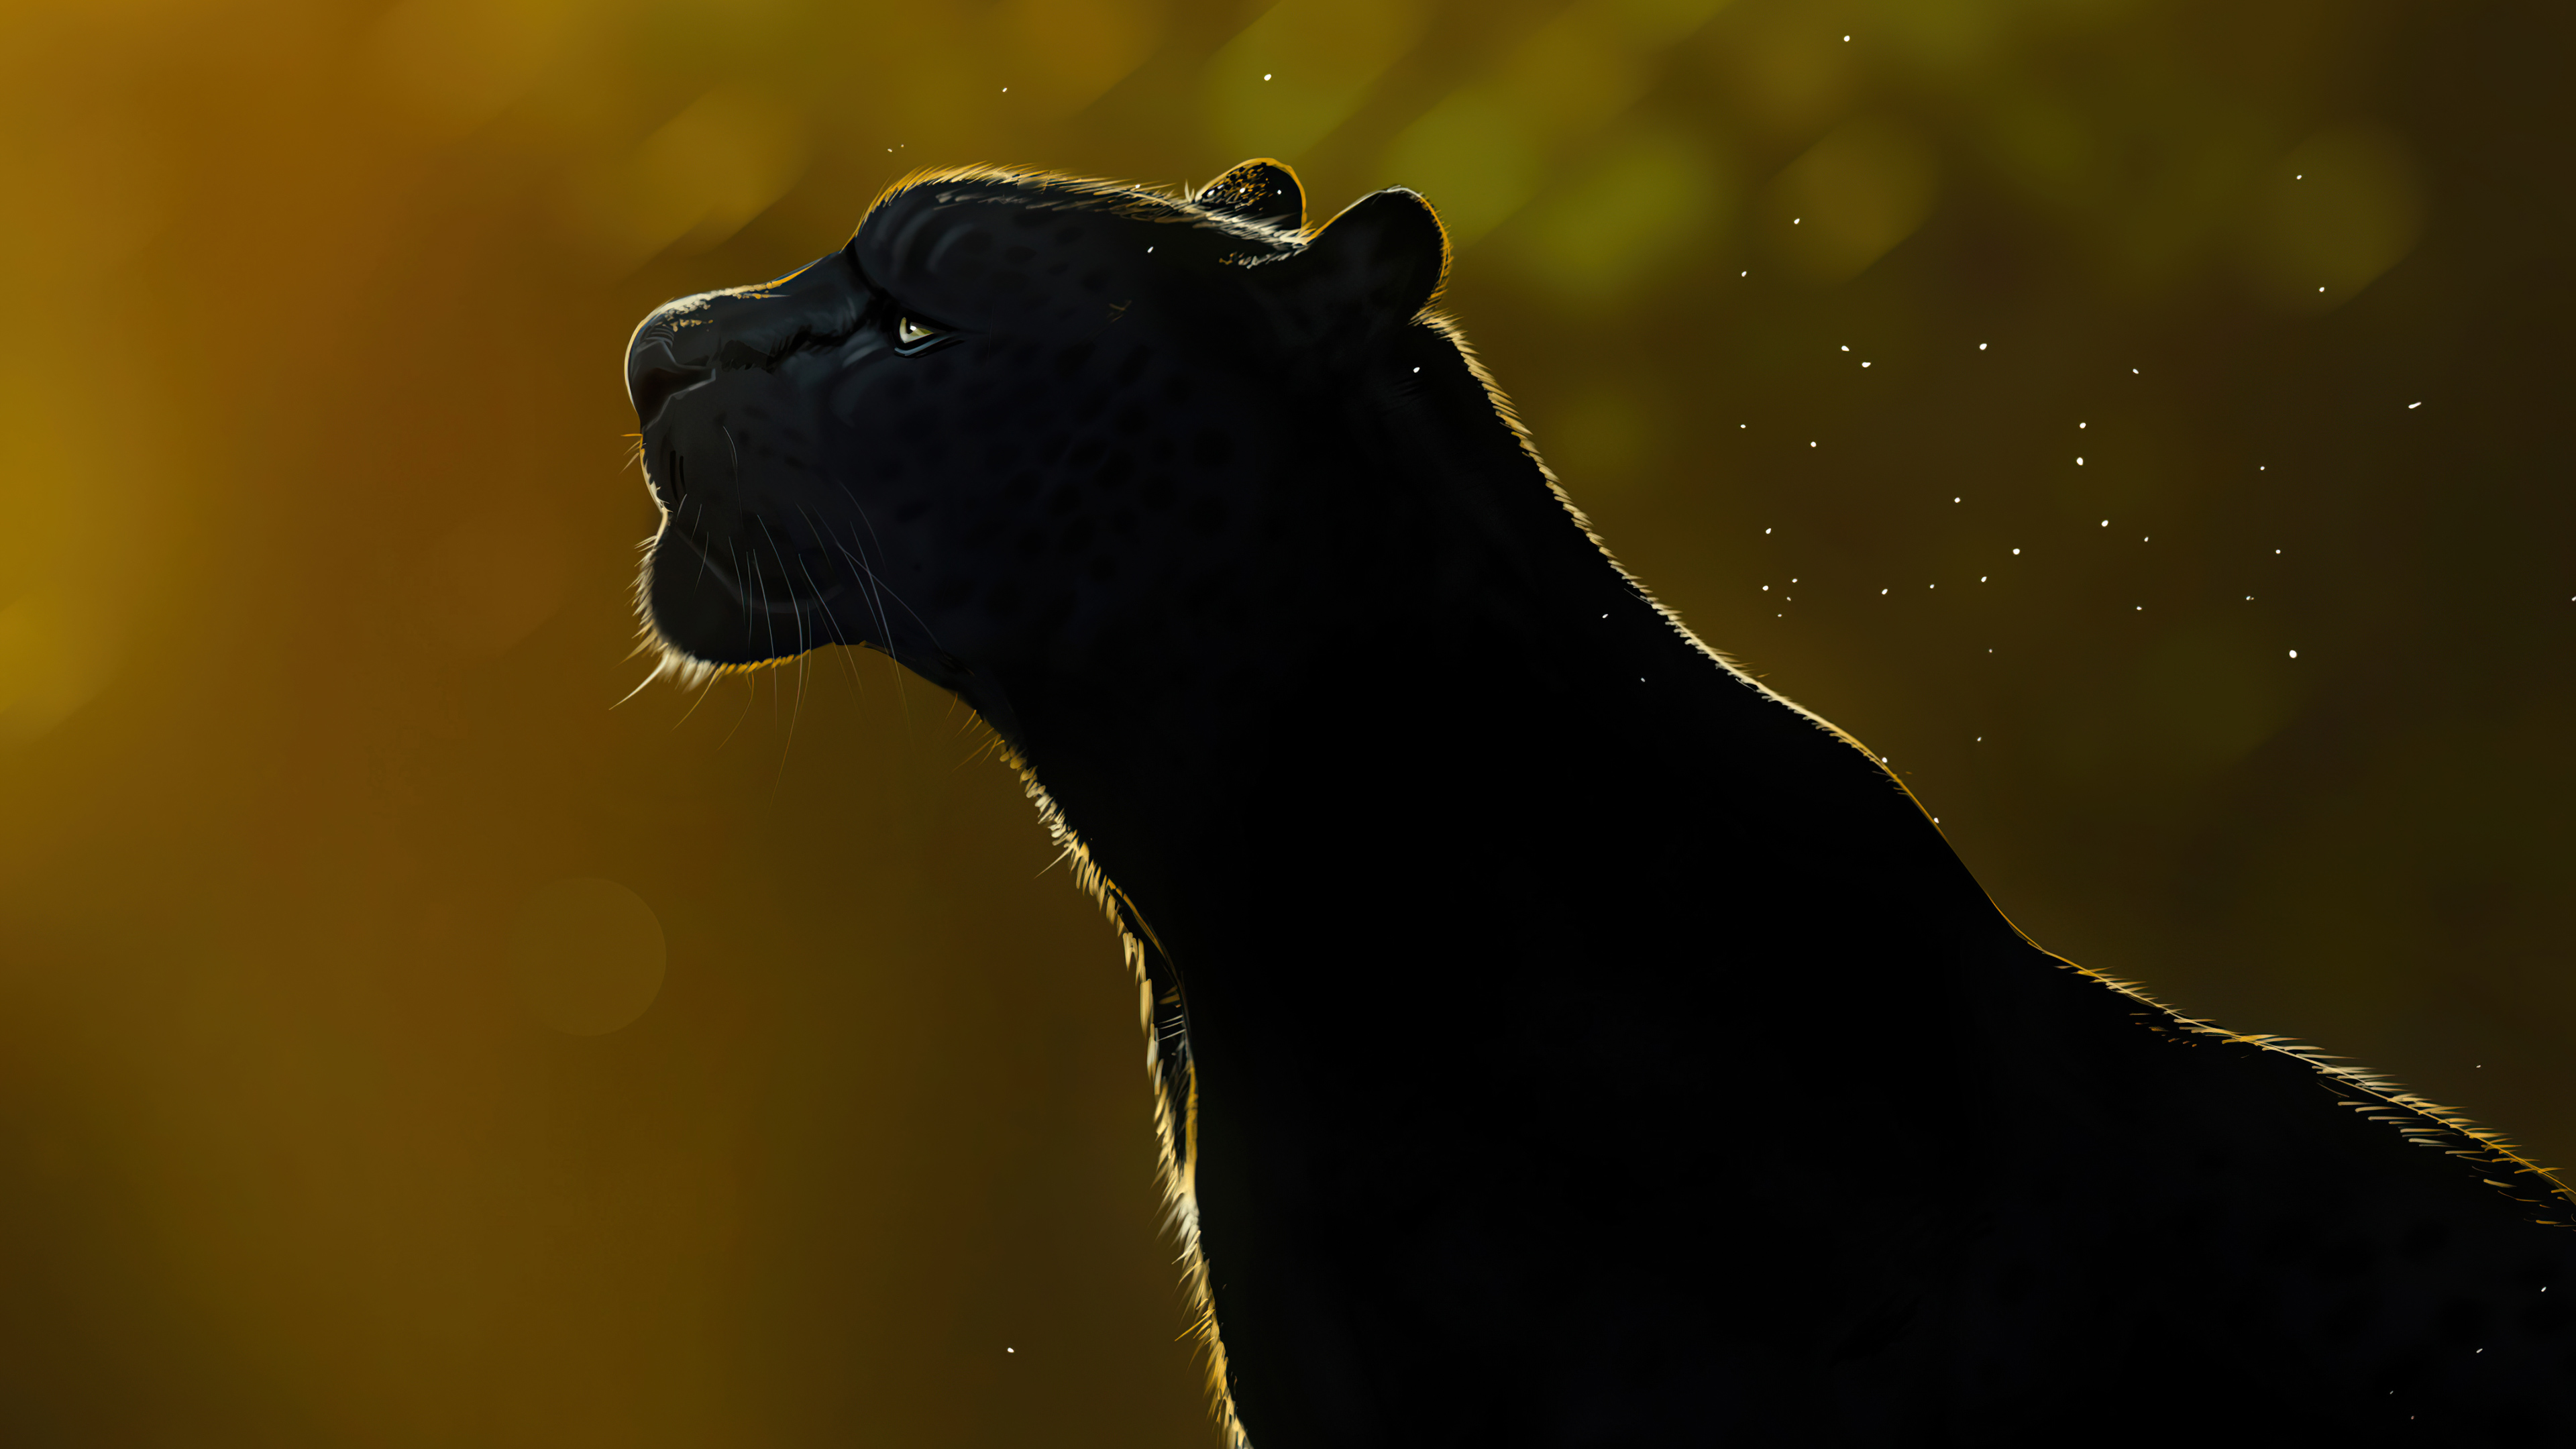 Free Spirit Black Panther 4k Wallpaper HD Artist Wallpapers 4k 